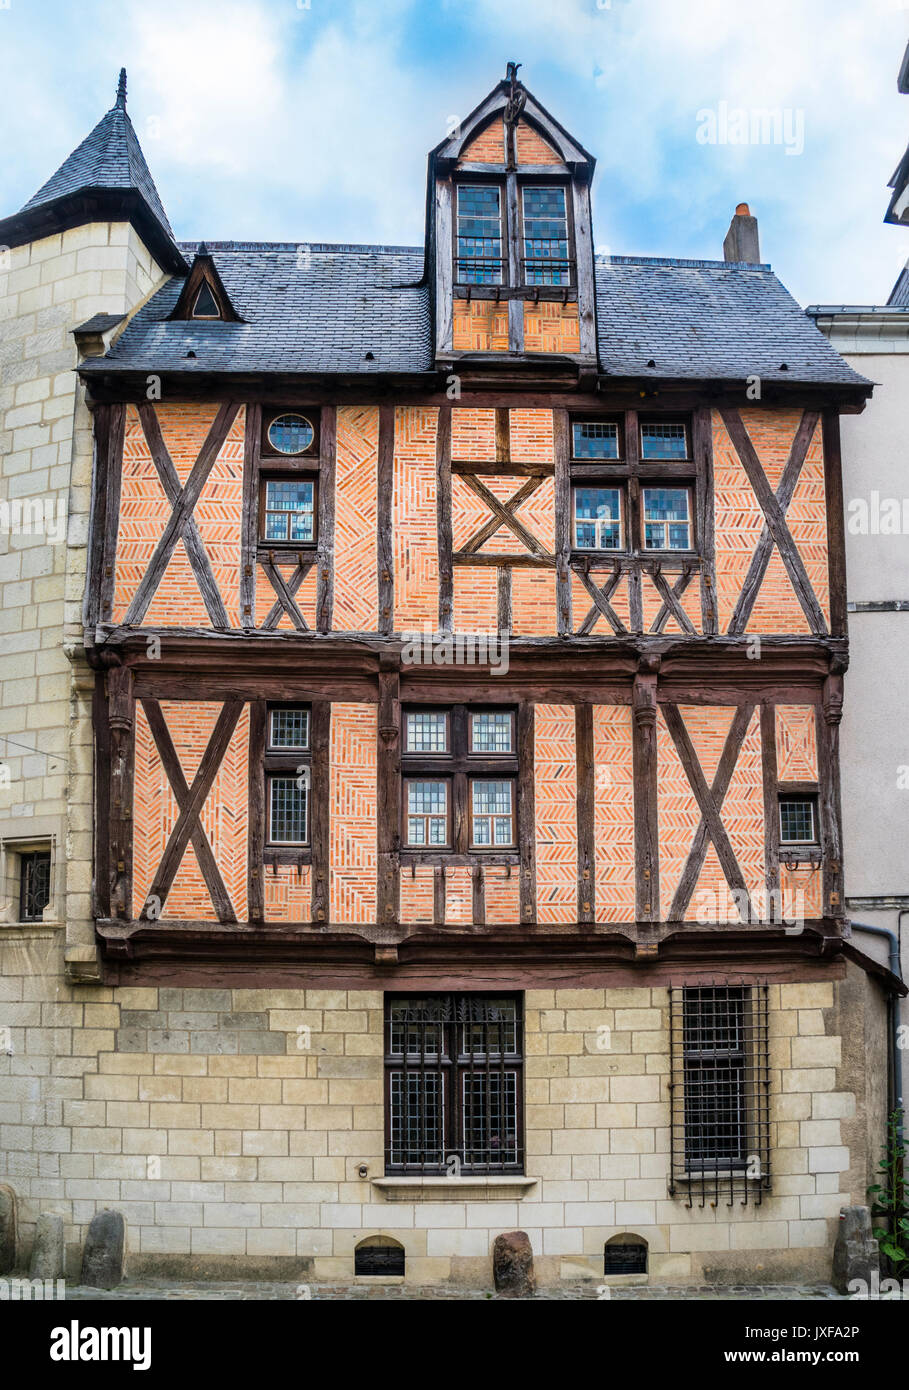 La France, pays de la Loire, Angers, cité médiévale maison à colombages Rue Saint-Aignan Banque D'Images